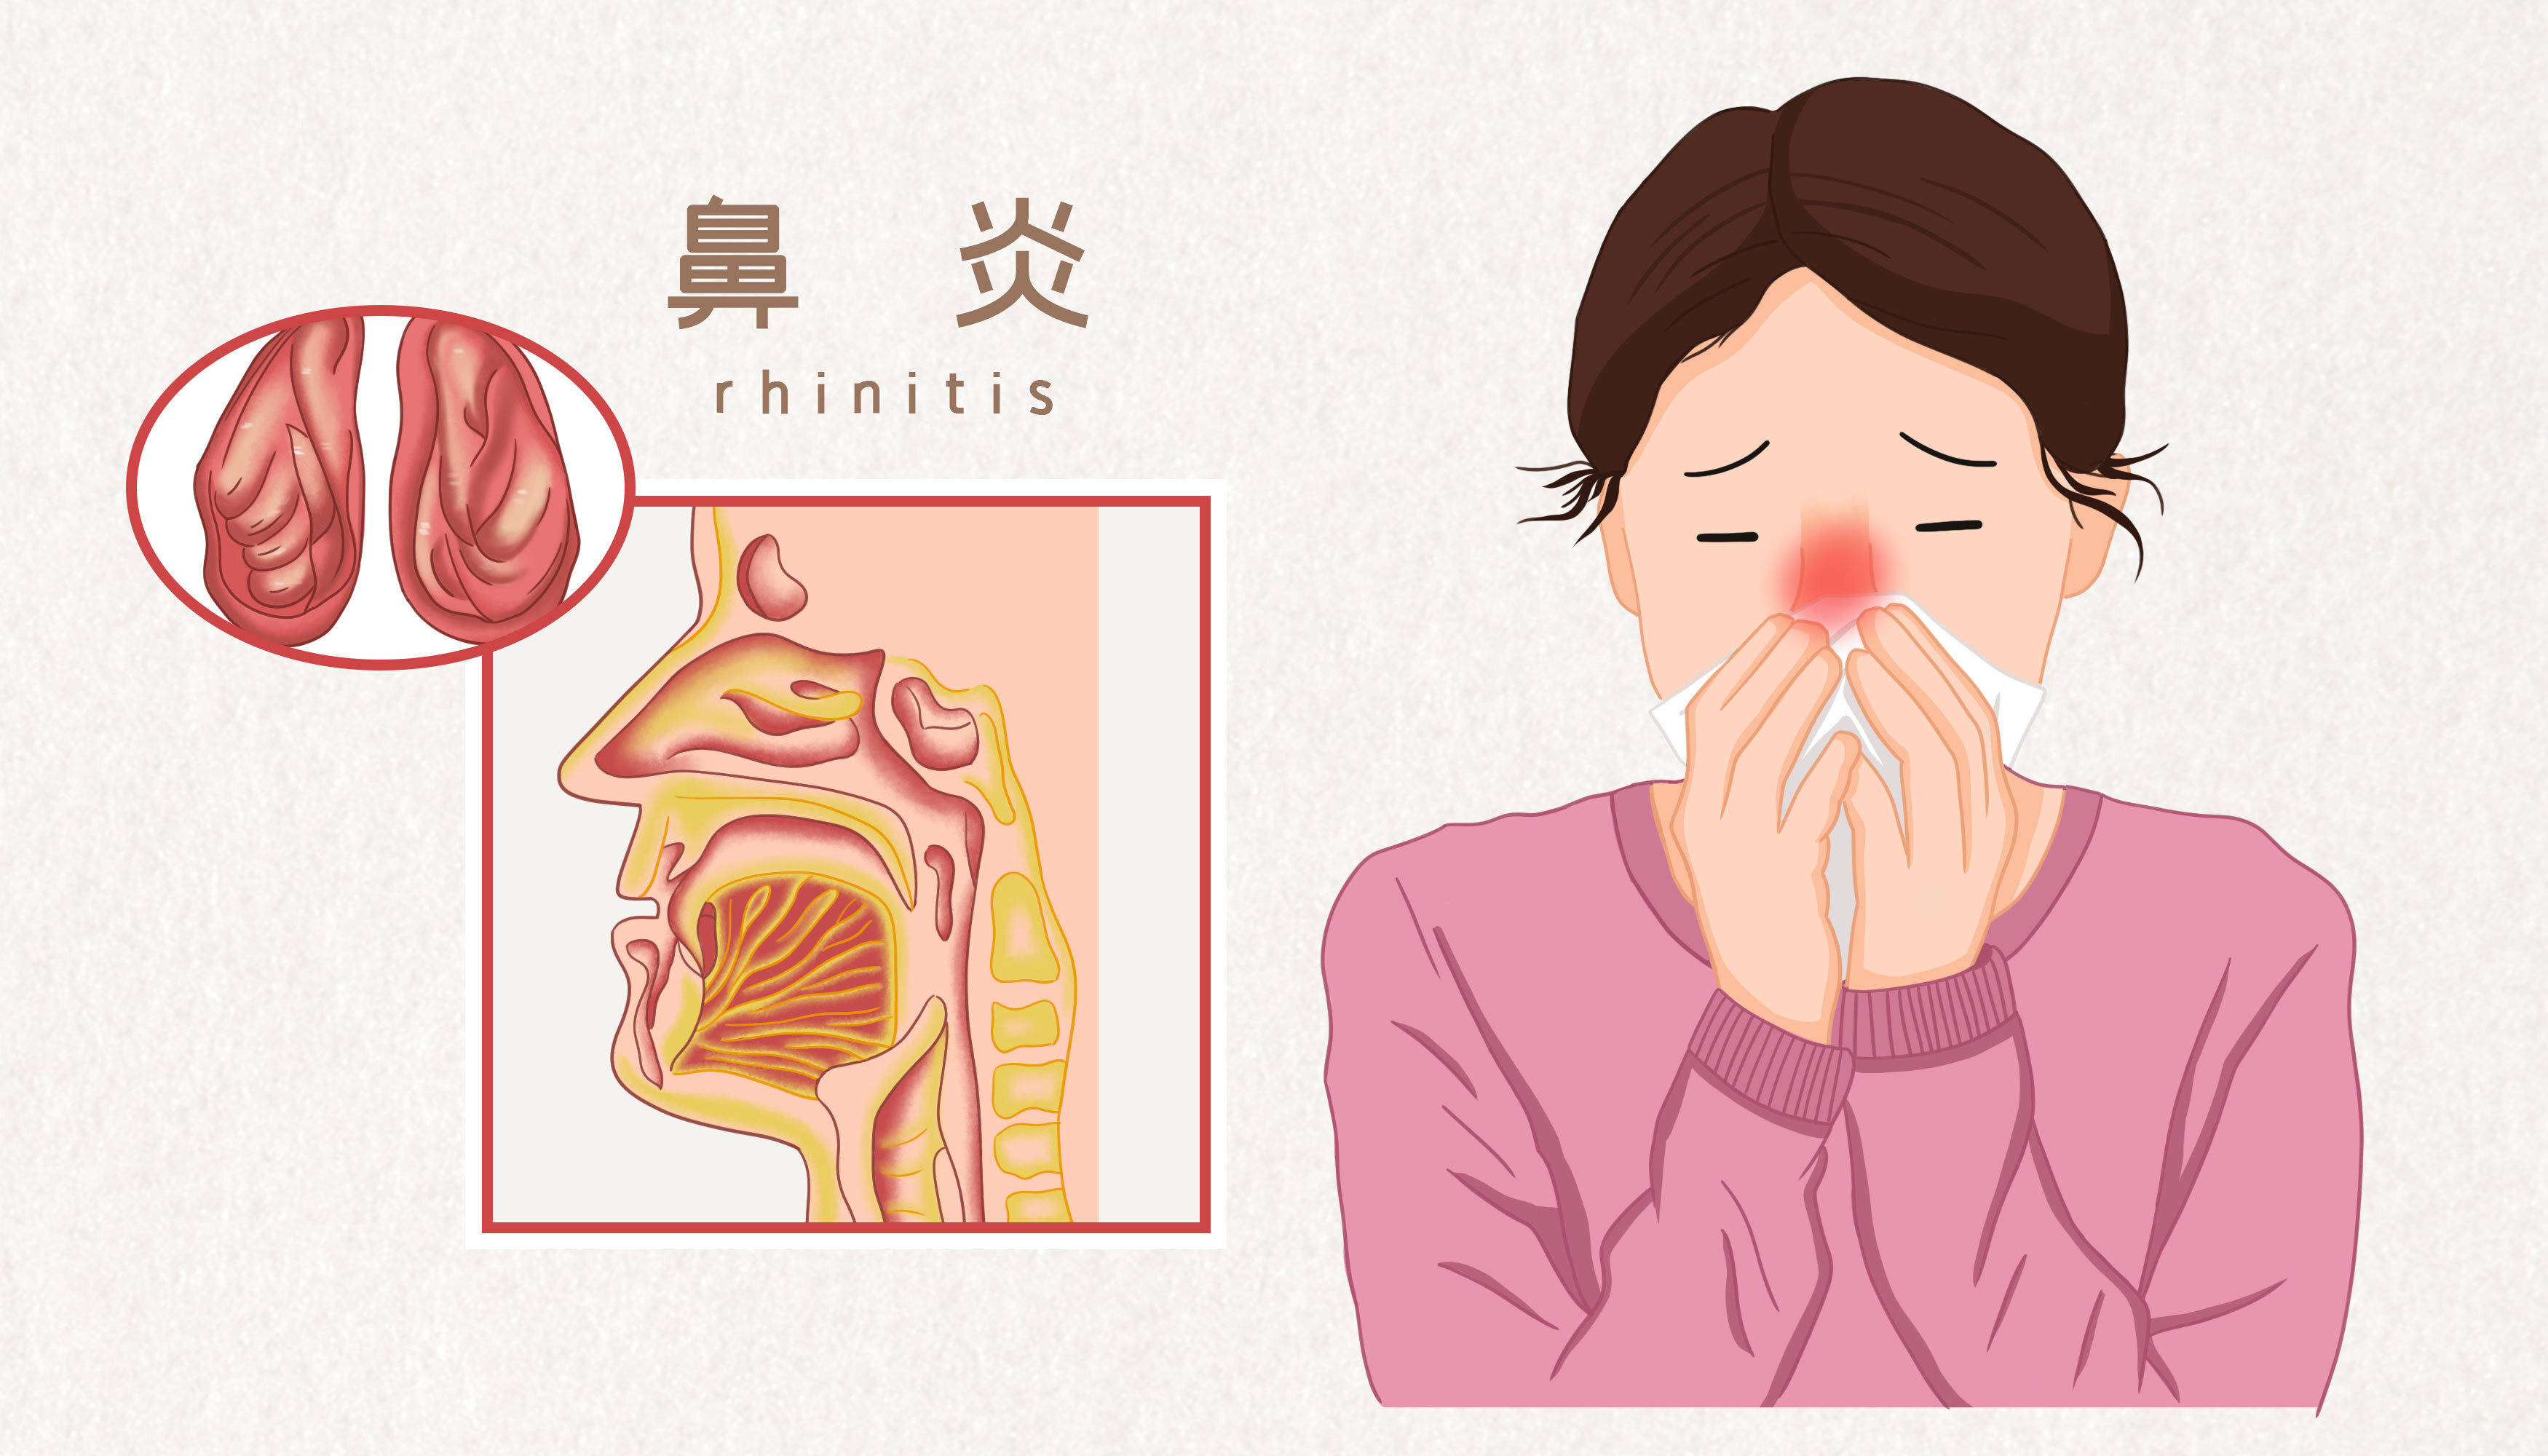 鼻炎常见症状大揭秘:百瑾堂鼻炎调理中心的专业解读